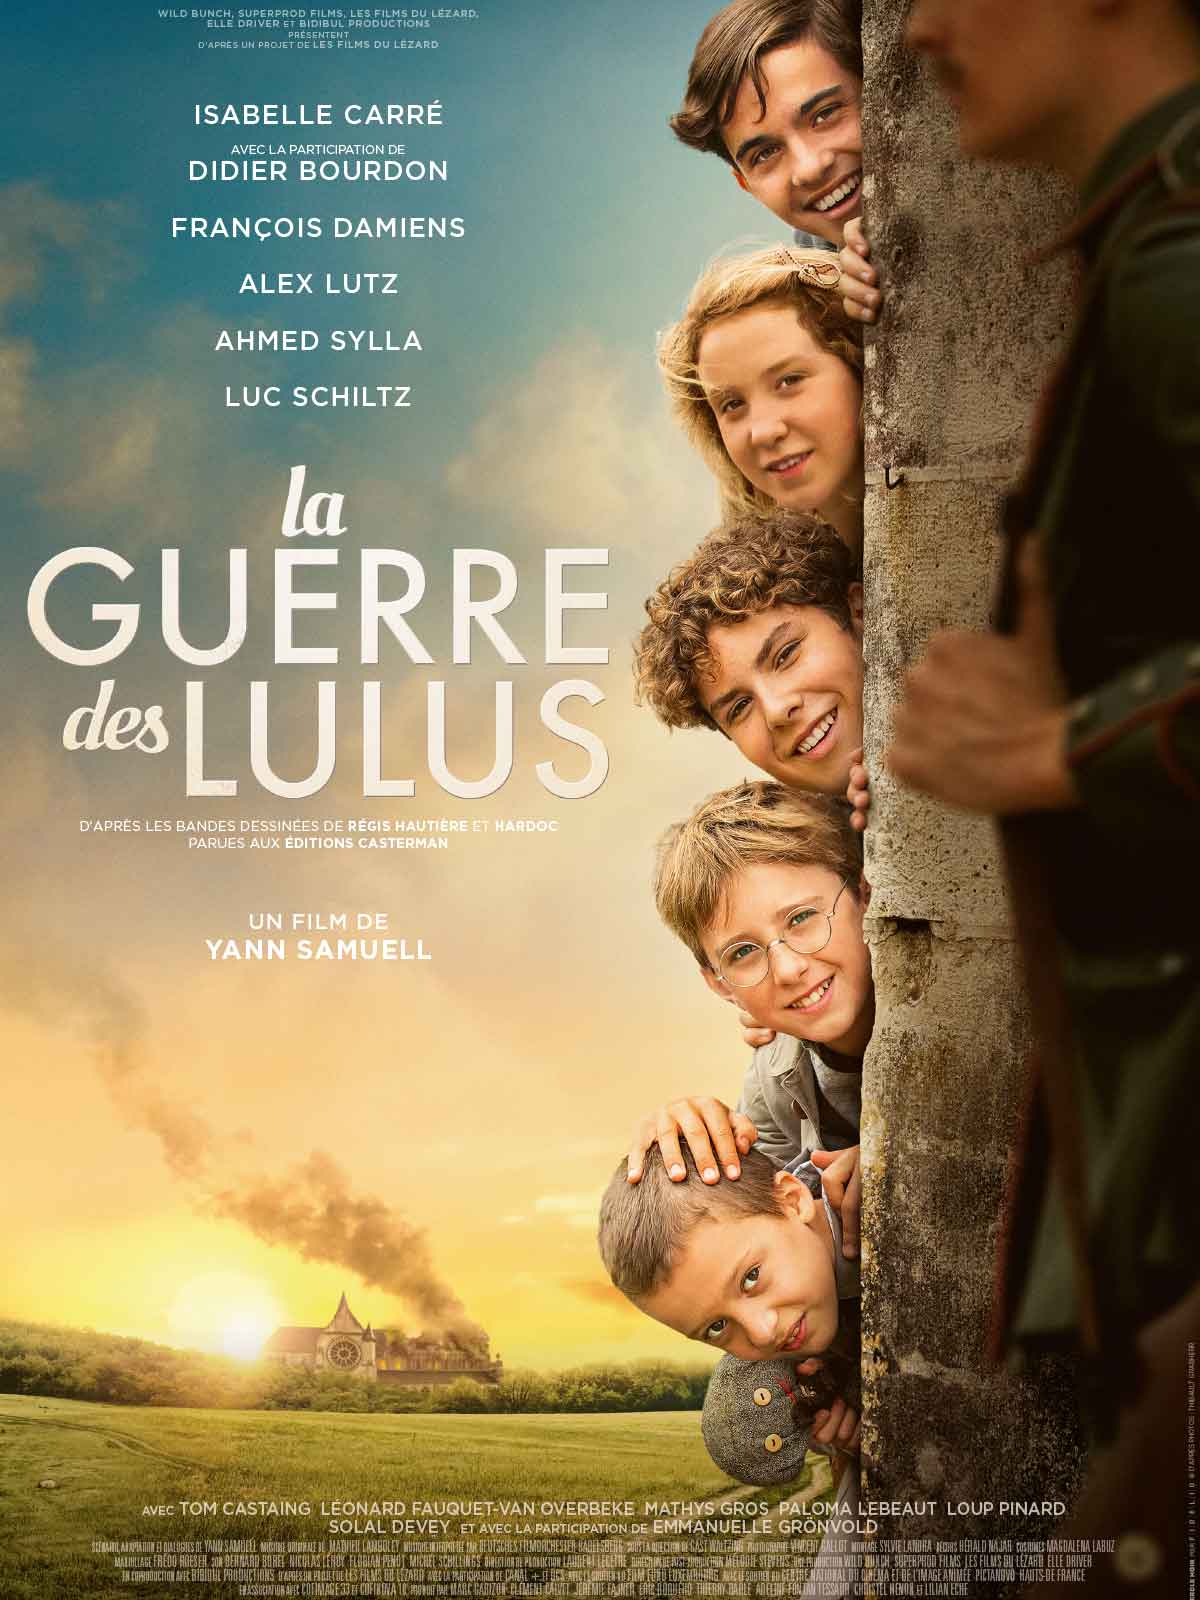 Poster of the film La Guerre des Lulus